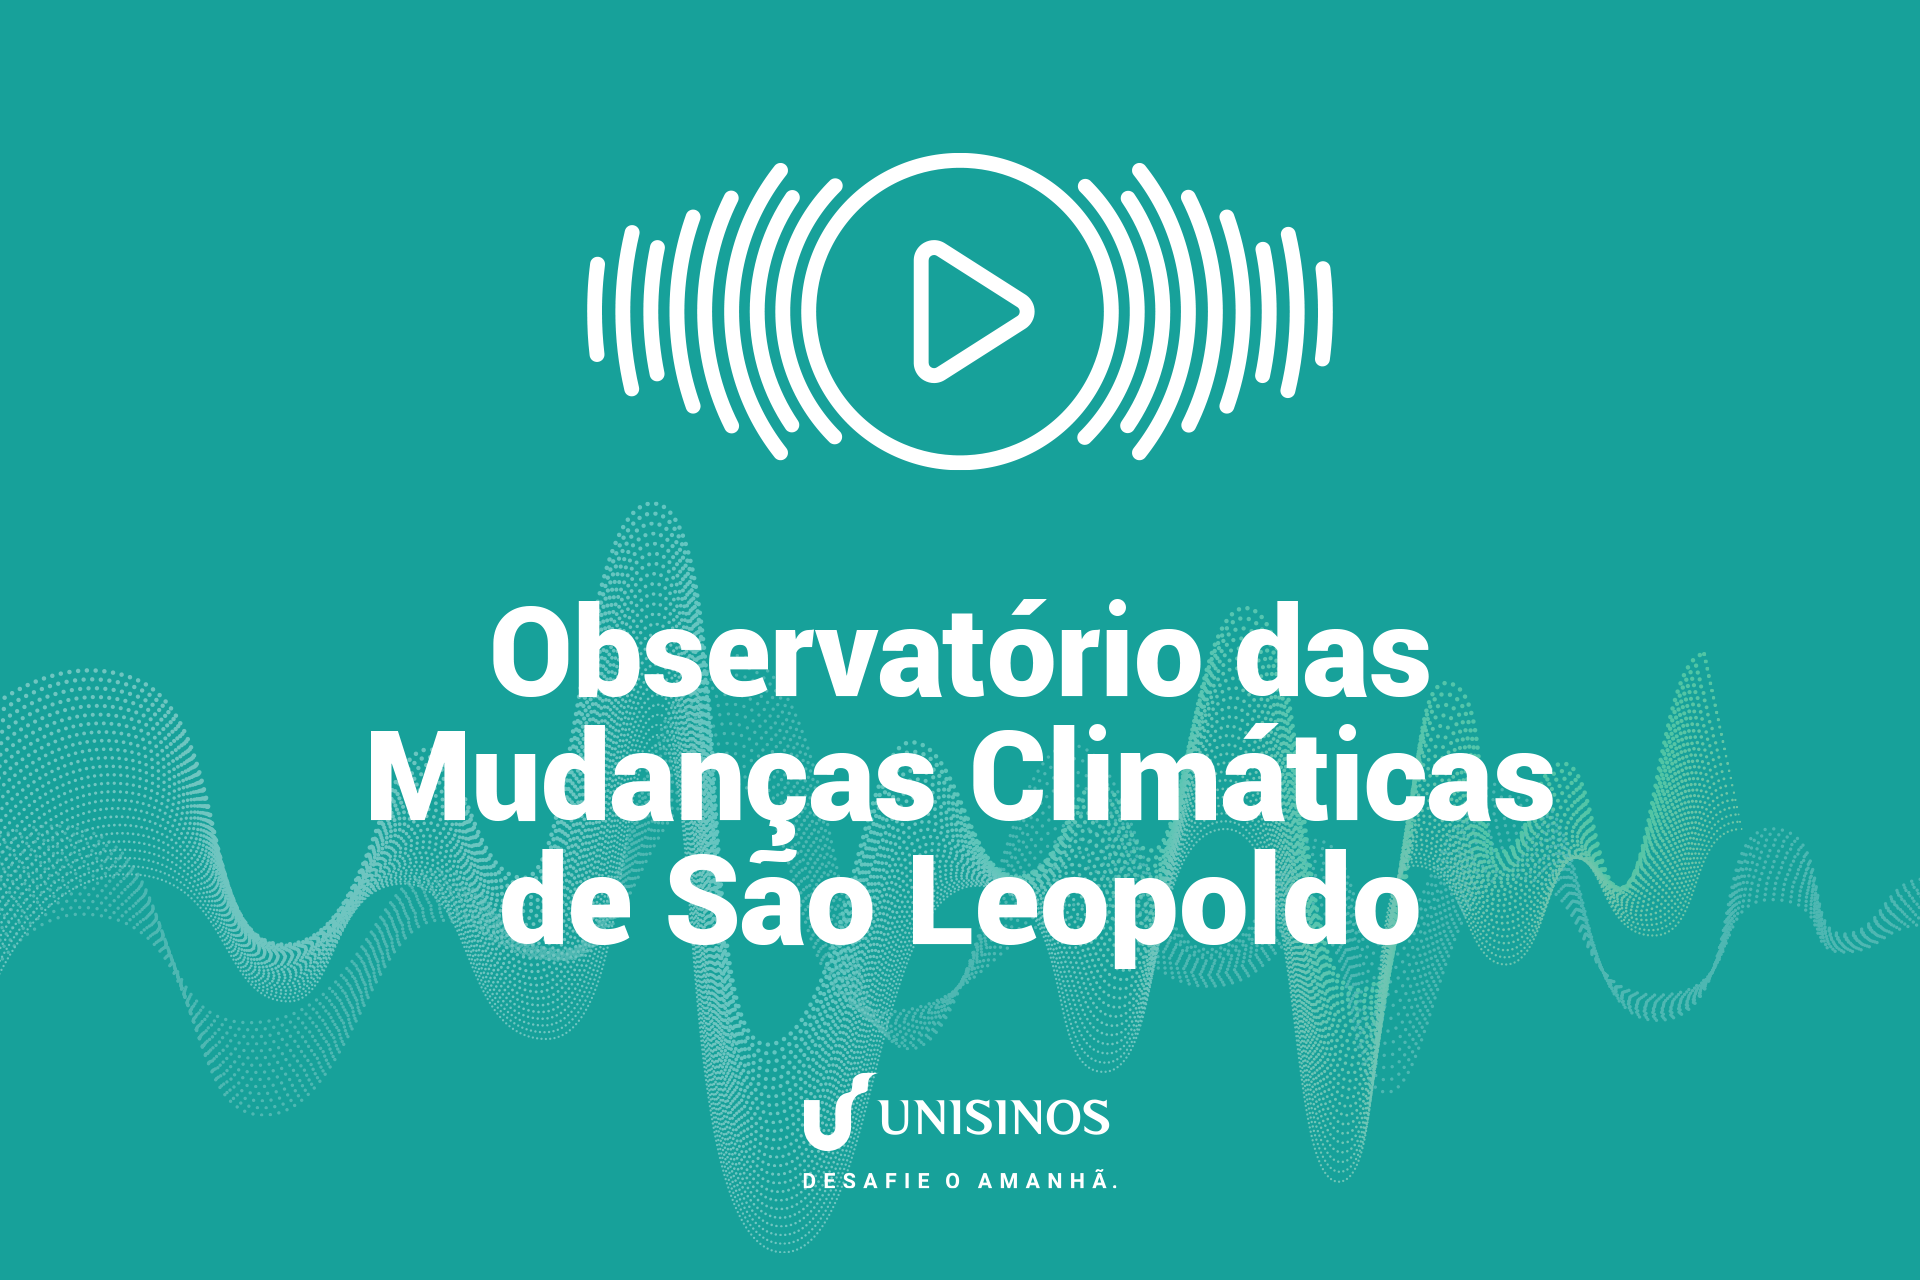 Observatório das Mudanças Climáticas abre em São Leopoldo